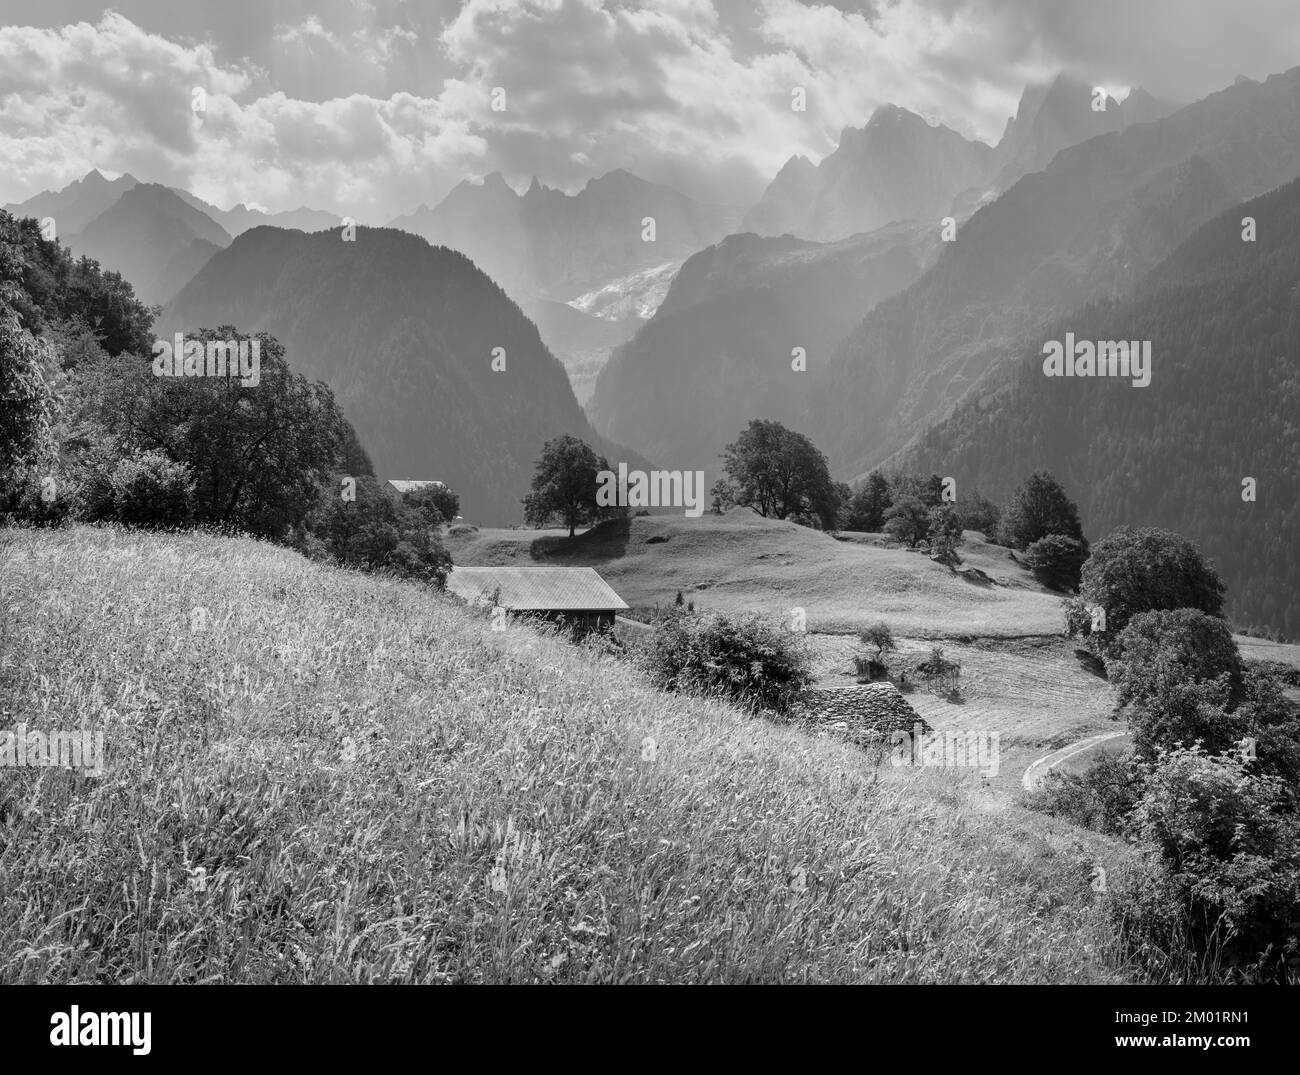 Le vette del Piz Badile, del Pizzo Cengalo e della Sciora nella catena del Bregaglia - Svizzera. Foto Stock